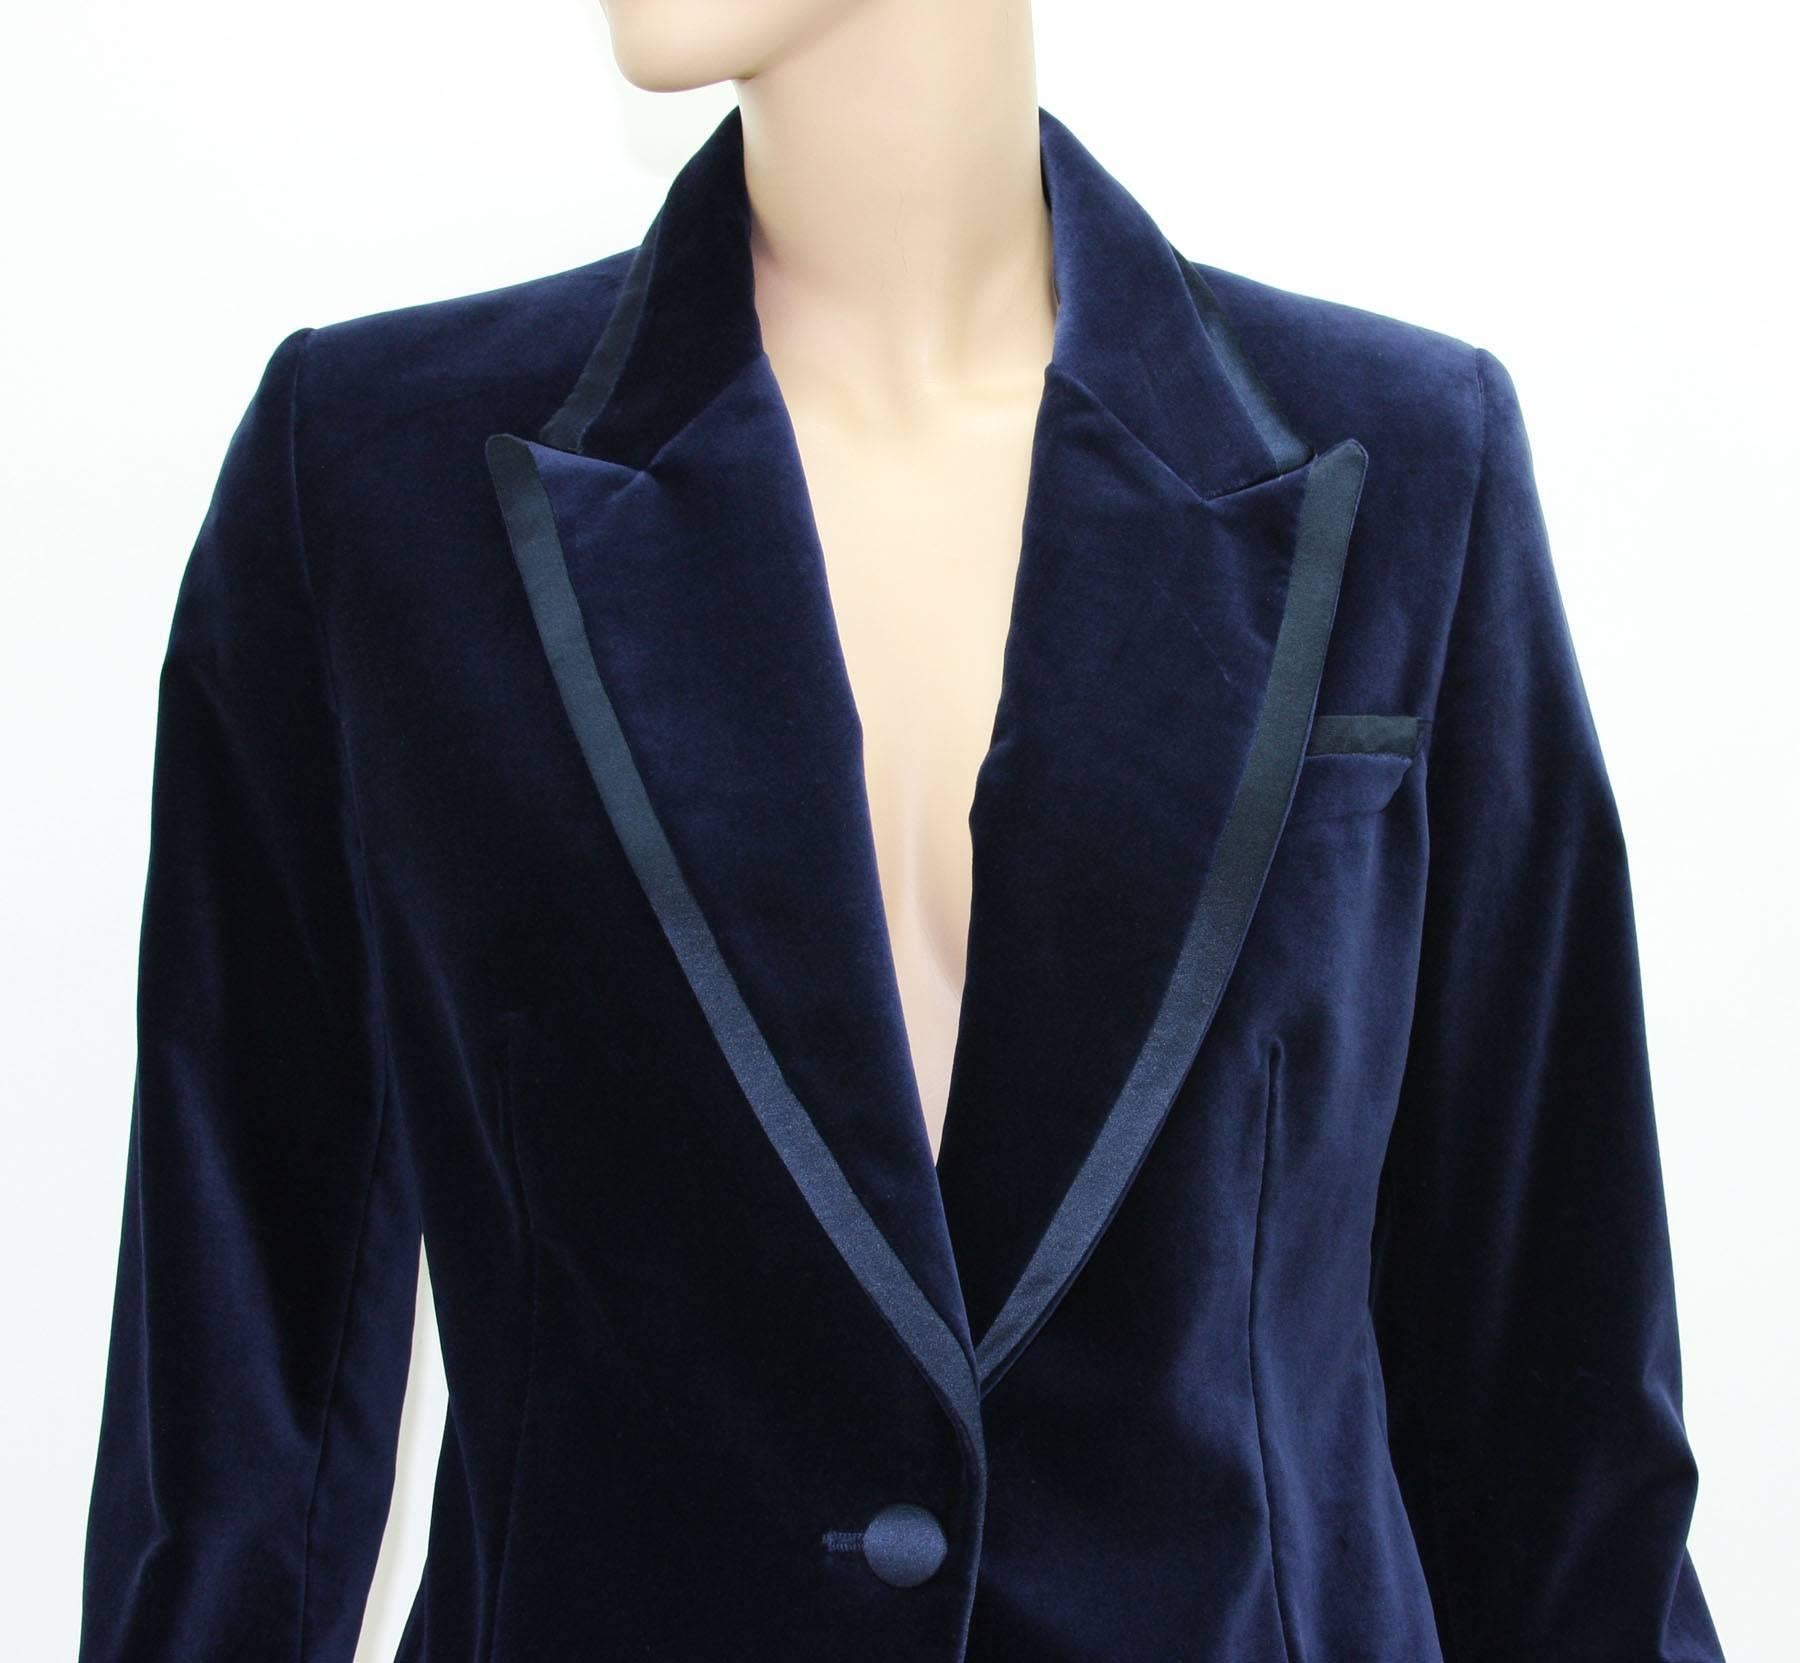 Tom Ford for Gucci 1996 Collection Dark Blue Velvet Tuxedo Jacket ...